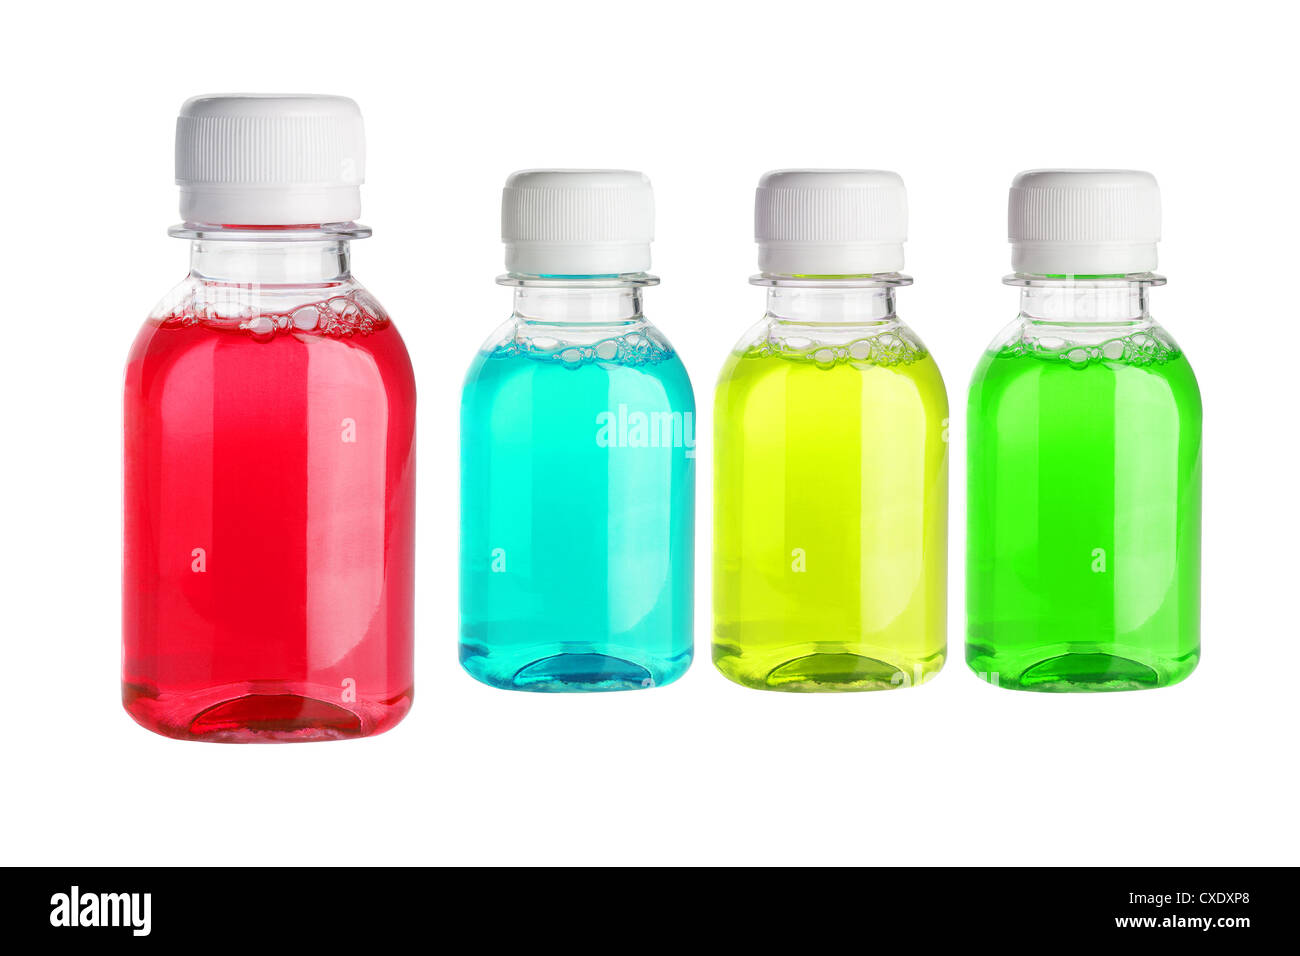 Laver la bouche multicolore dans des bouteilles en plastique sur fond blanc Banque D'Images